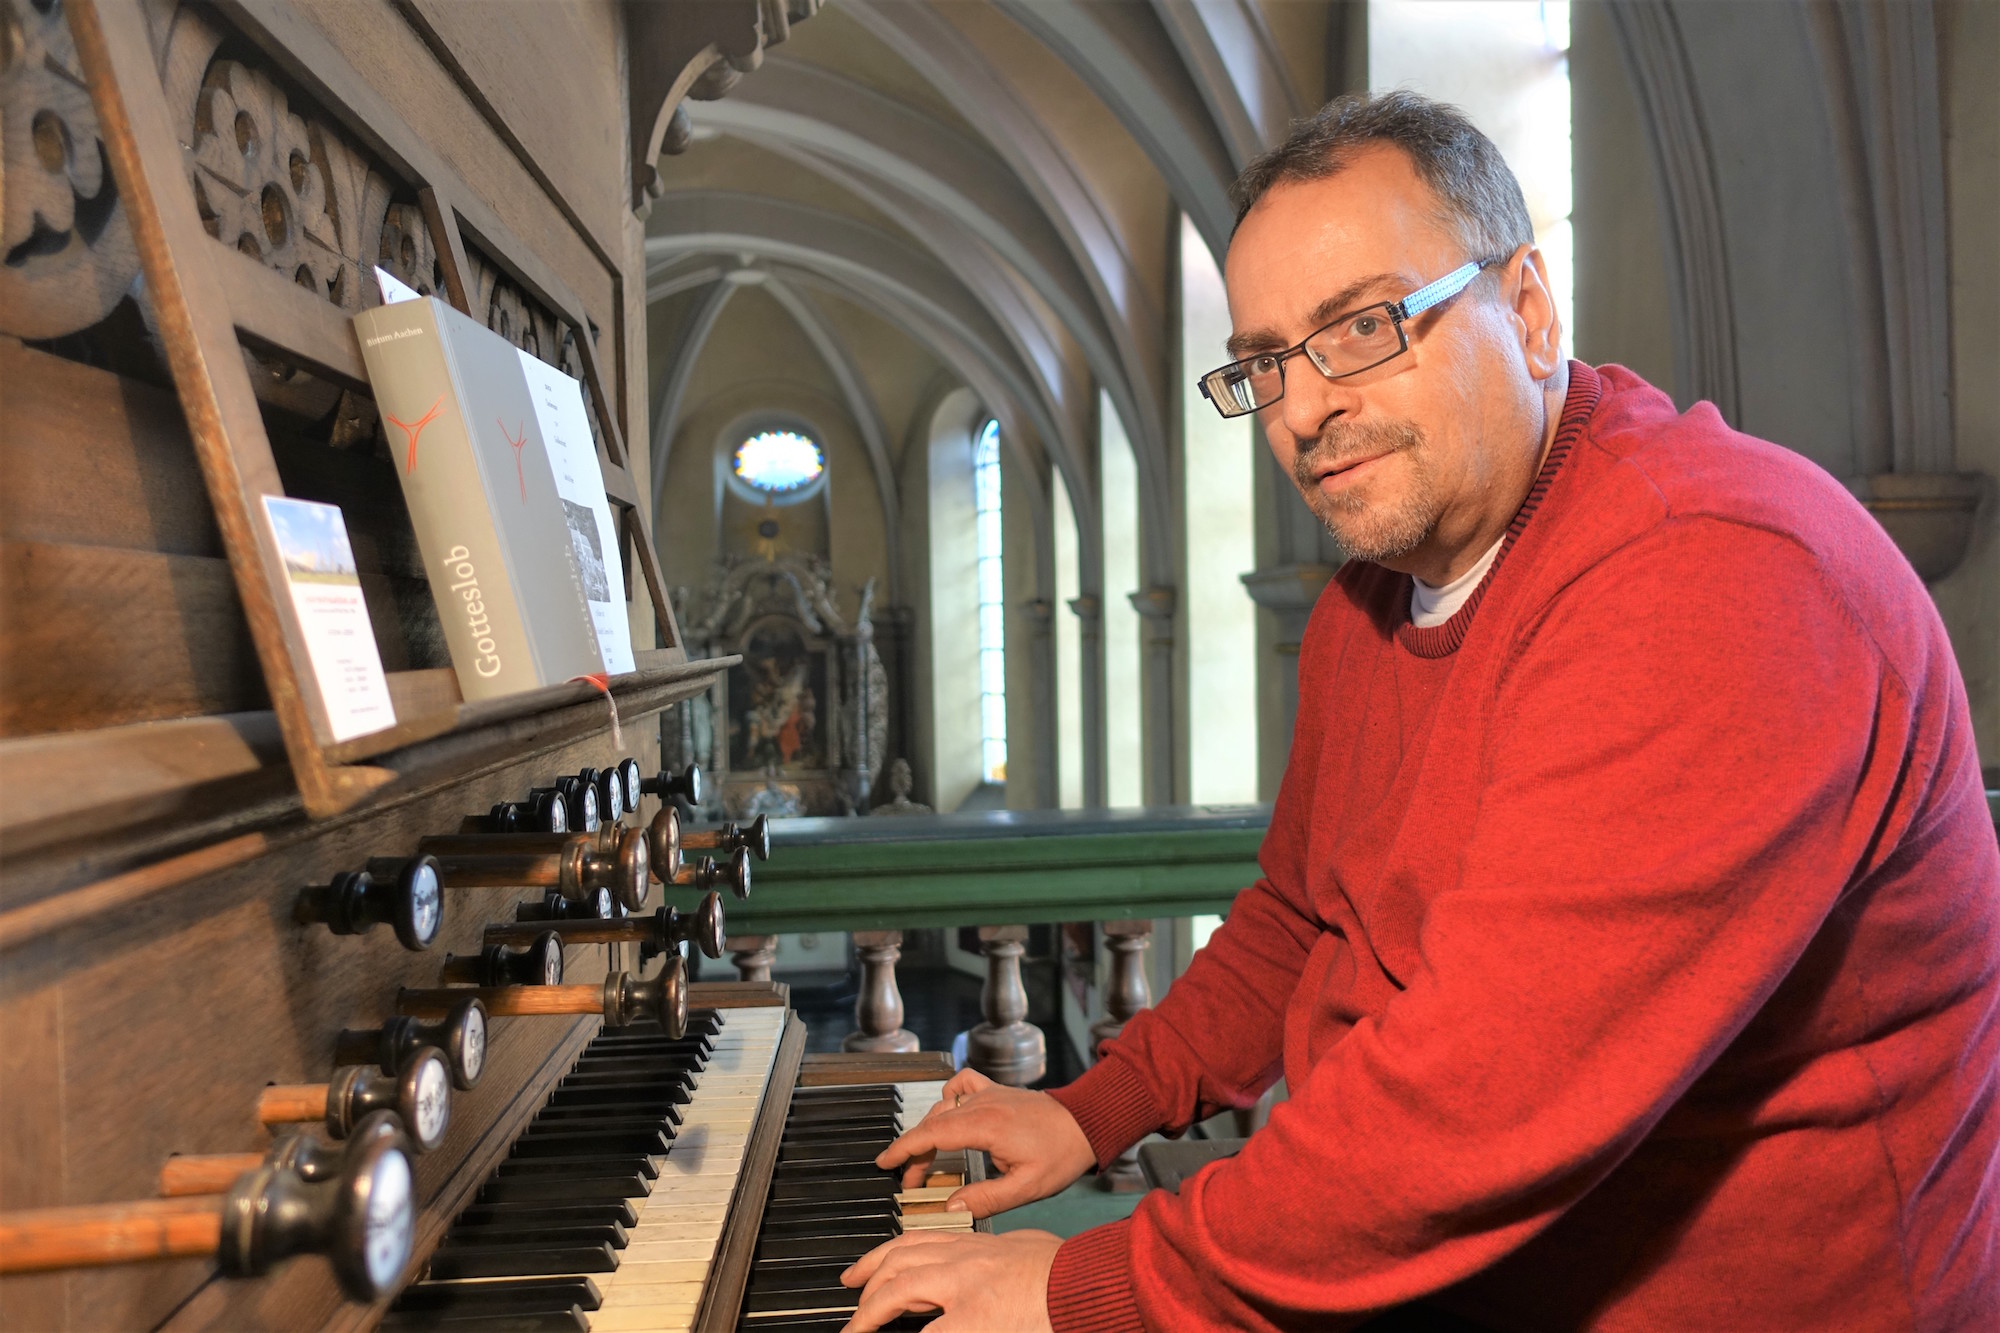 Organist Peter Mellentin an der historischen Orgel von 1879. (c) Andreas Drouve